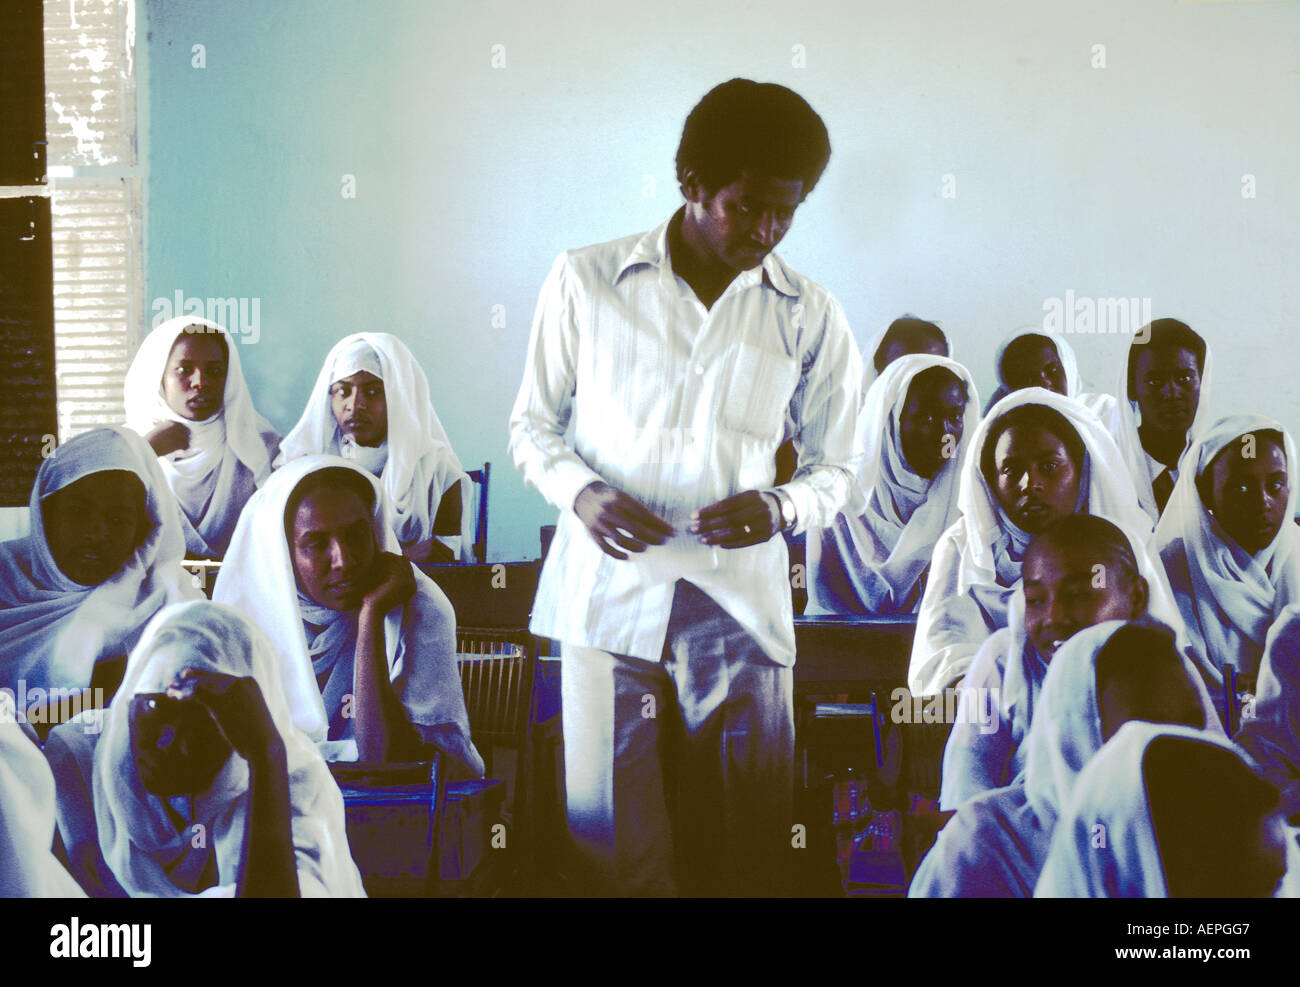 Sudan un insegnante maschio con femmina srudents in auletta scuola Foto Stock